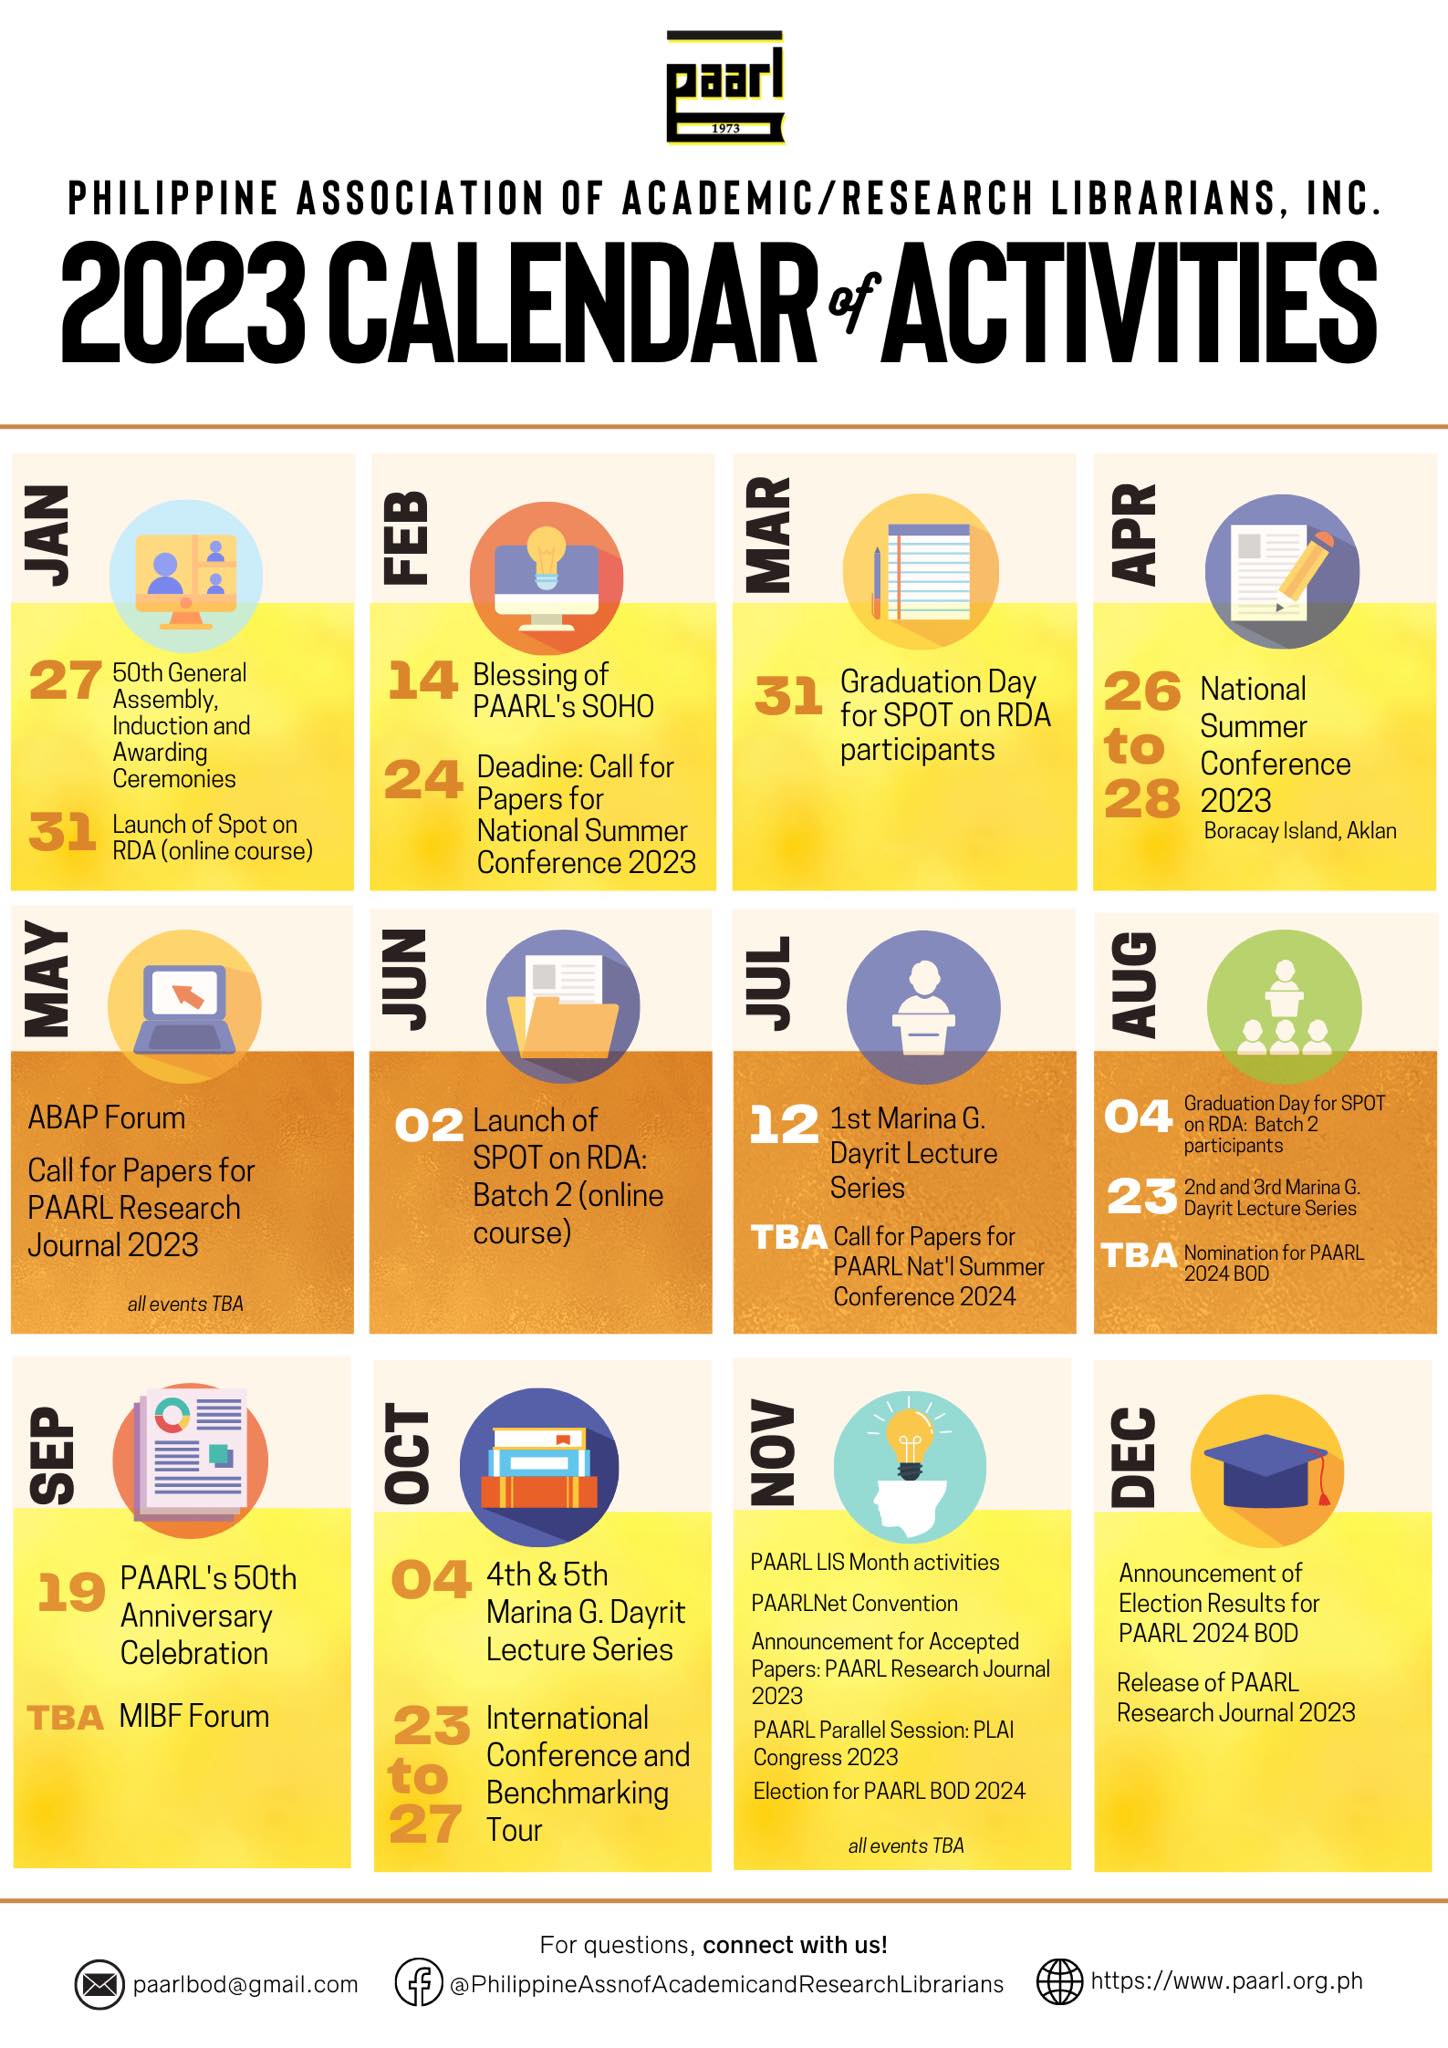 2023 PAARL’s Calendar of Activities